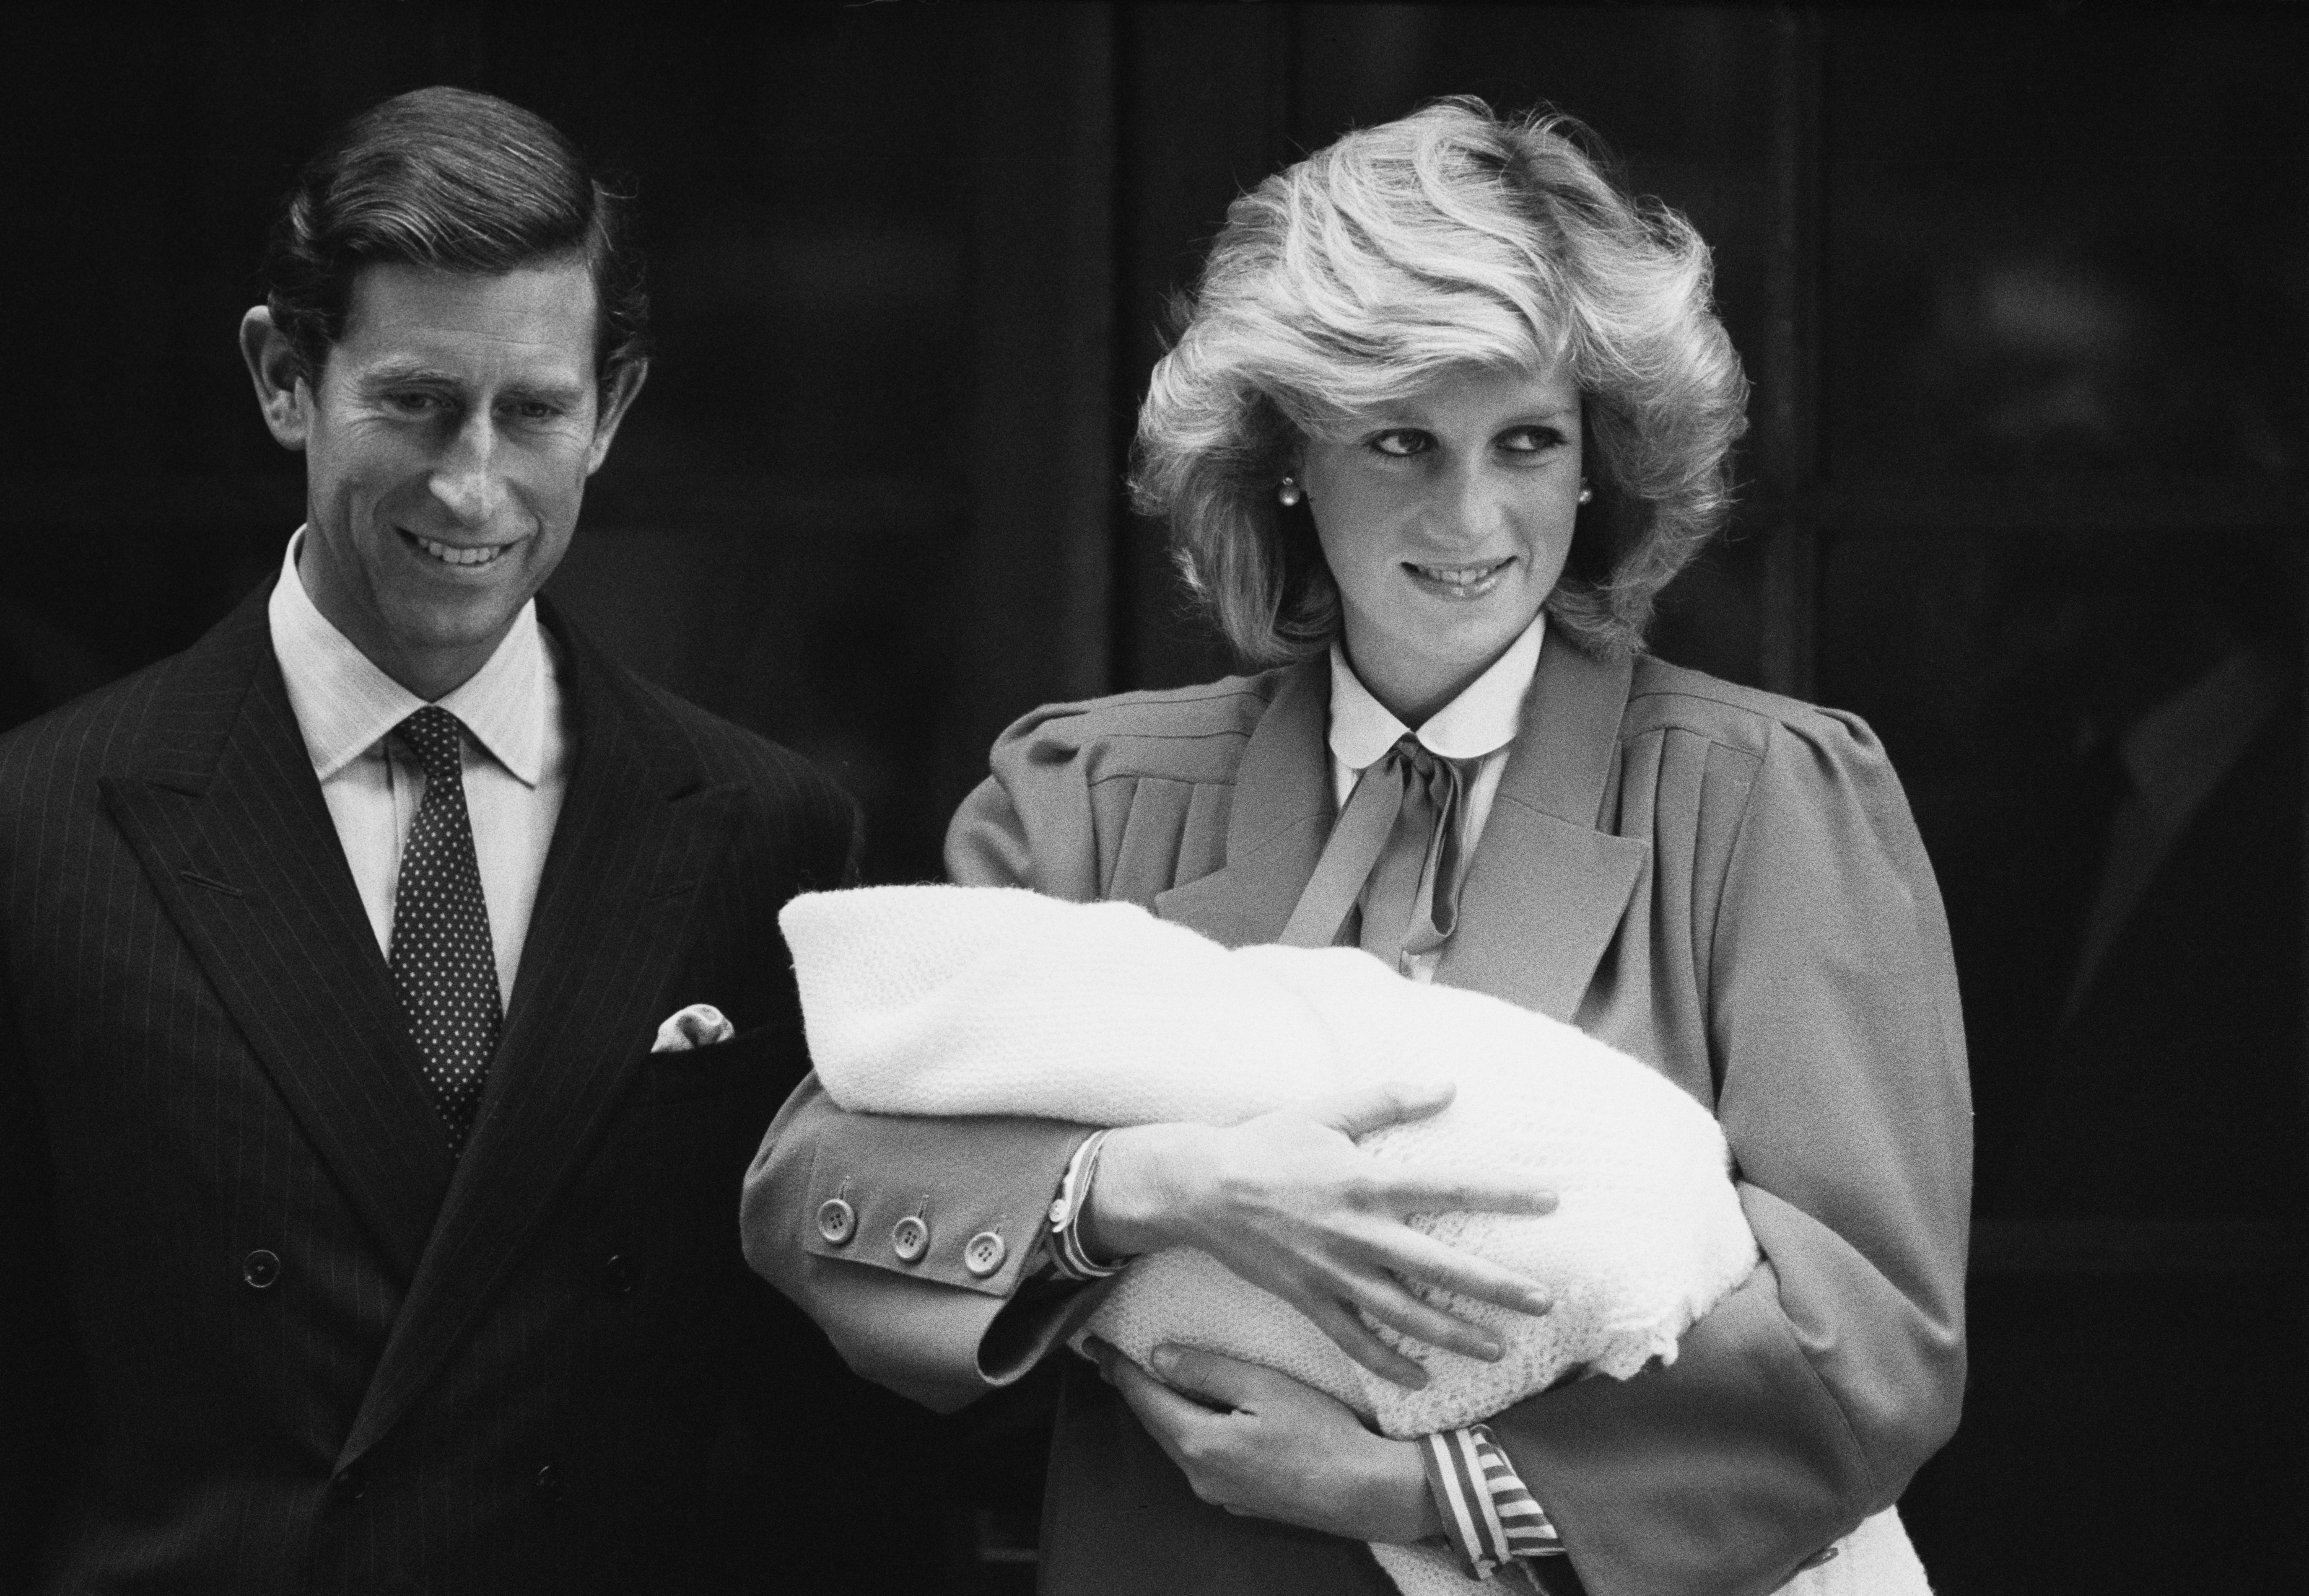 Diana Princesa de Gales y el Príncipe Carlos con el recién nacido Príncipe Harry, abandonan el Hospital St Mary's en Paddington, Londres, Reino Unido, 16 de septiembre de 1984; Diana lució un conjunto diseñado por Jan Van Velden. (Foto de Steve Wood/Daily Express/Hulton Archive/Getty Images)
